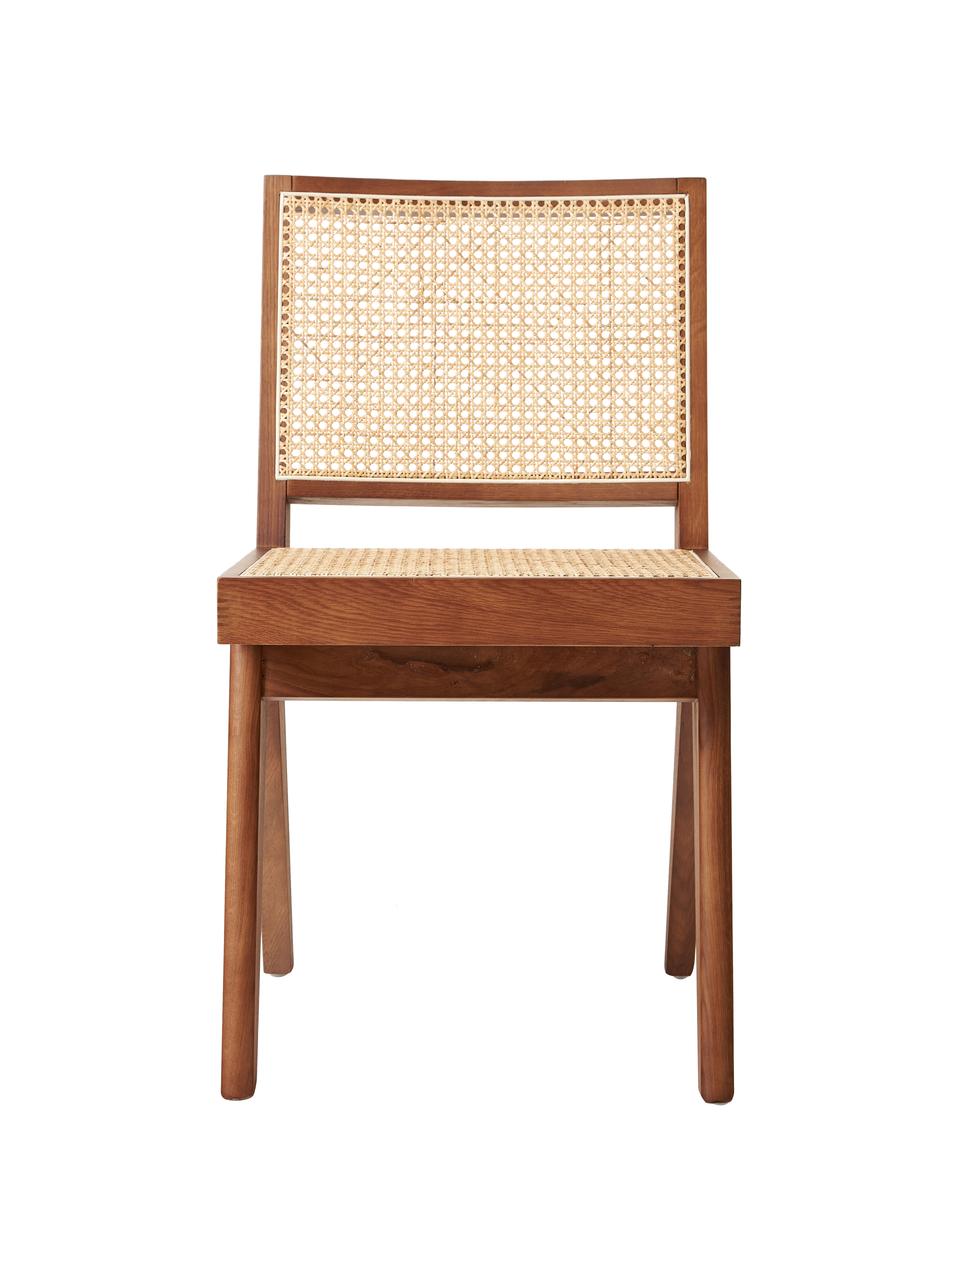 Chaise cannage Sissi, Bois foncé avec cannage, larg. 46 x prof. 56 cm